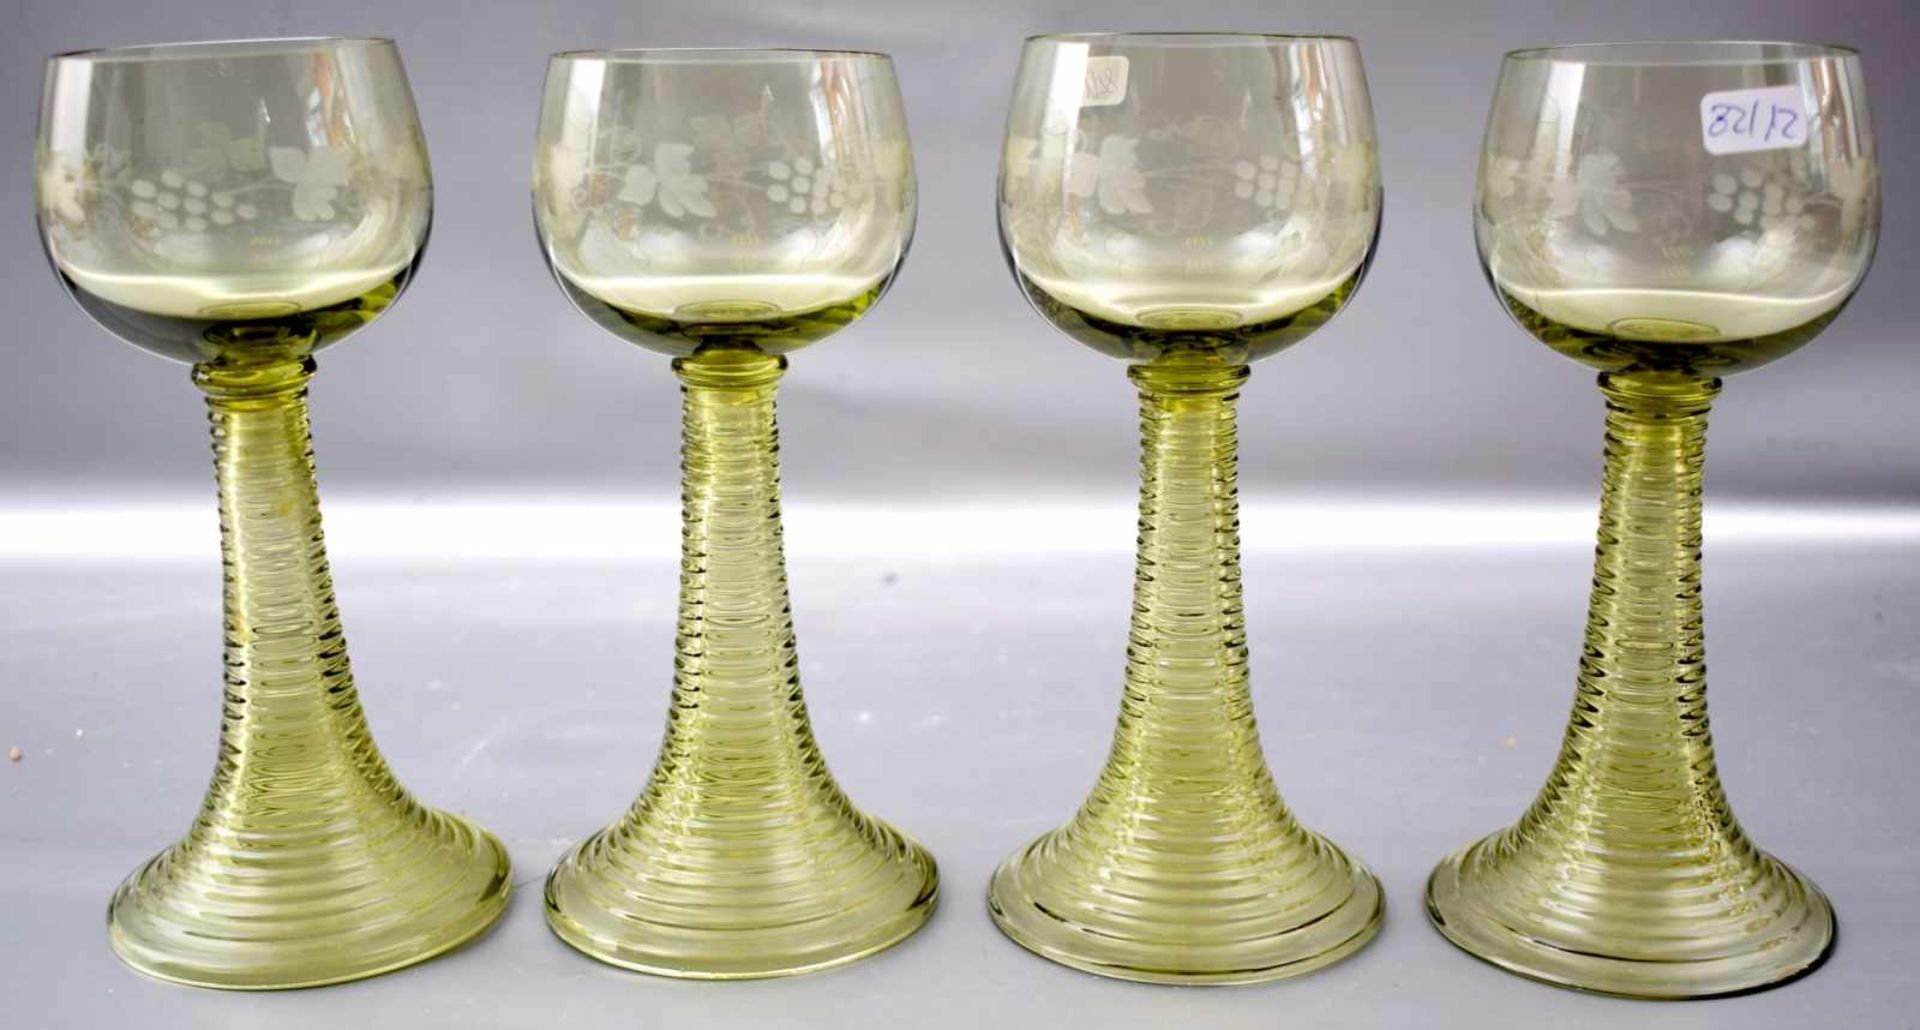 Vier Weingläser grünes Glas, runder Fuß, Kelch mit Weinranken verziert, H 17 cm, um 1900